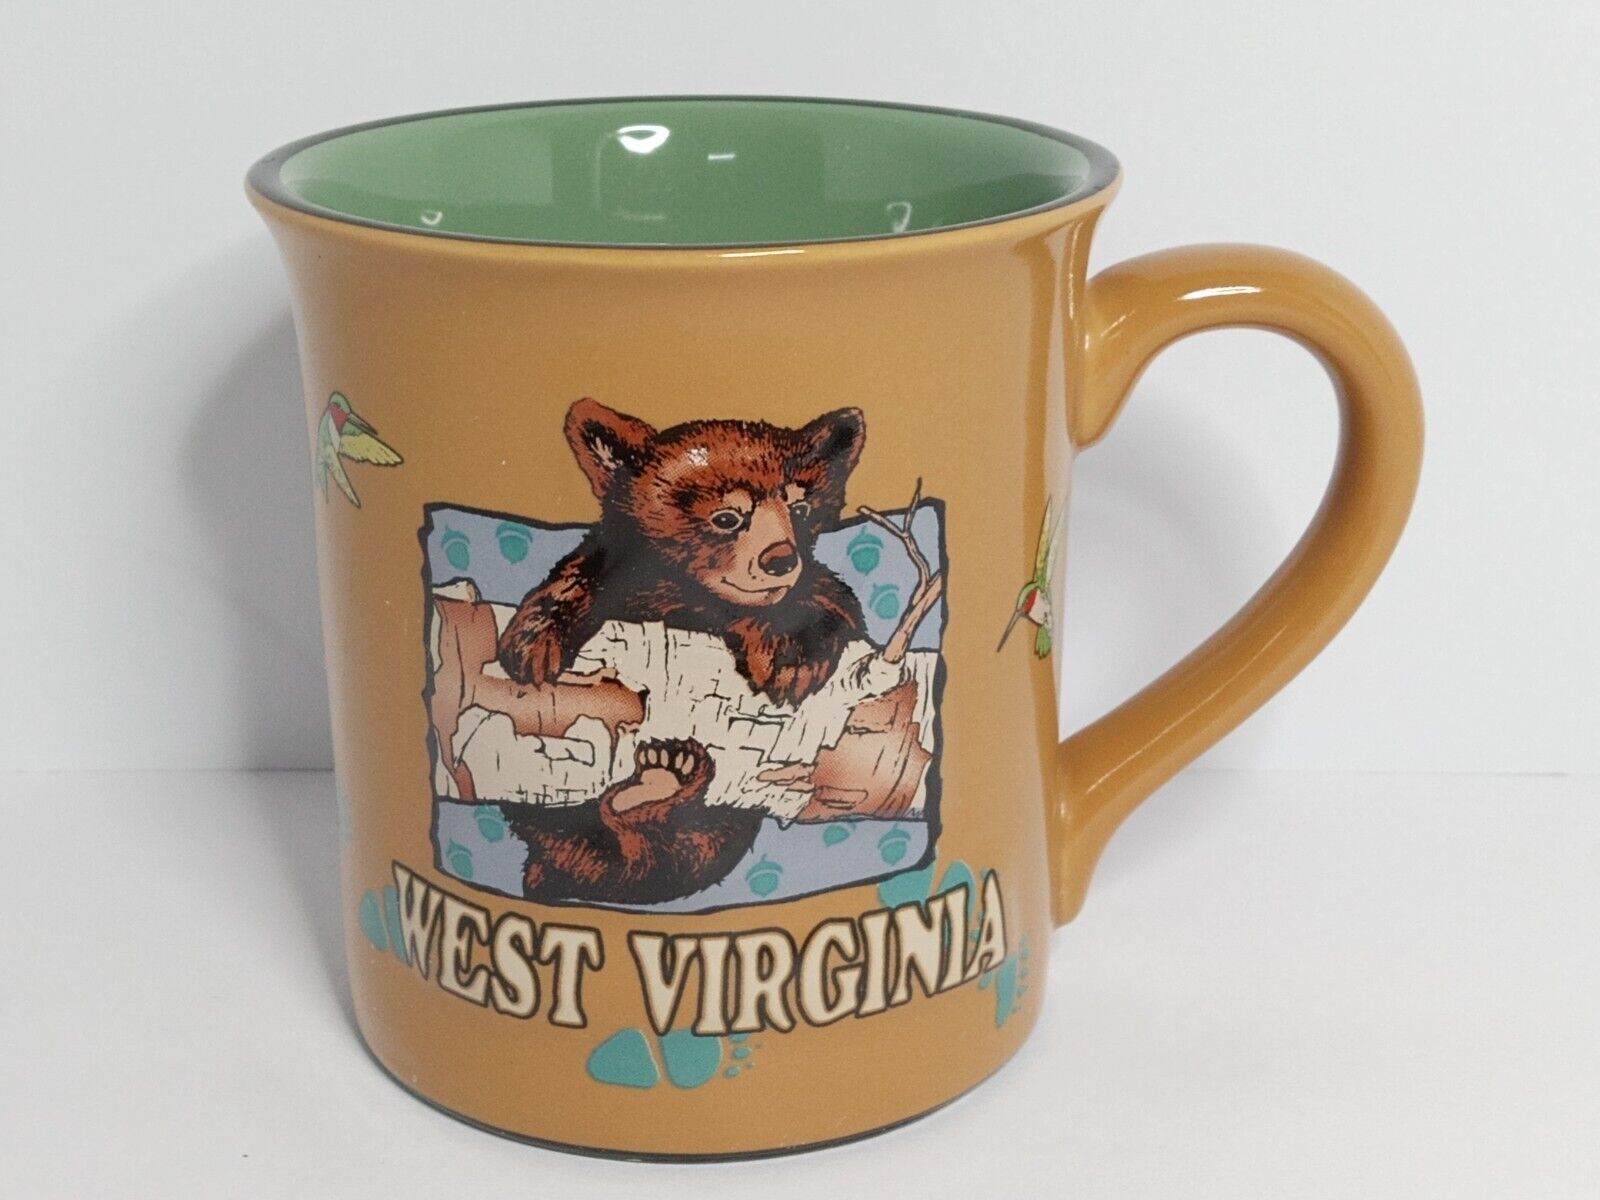 West Virginia Bear and Deer Coffee Cup